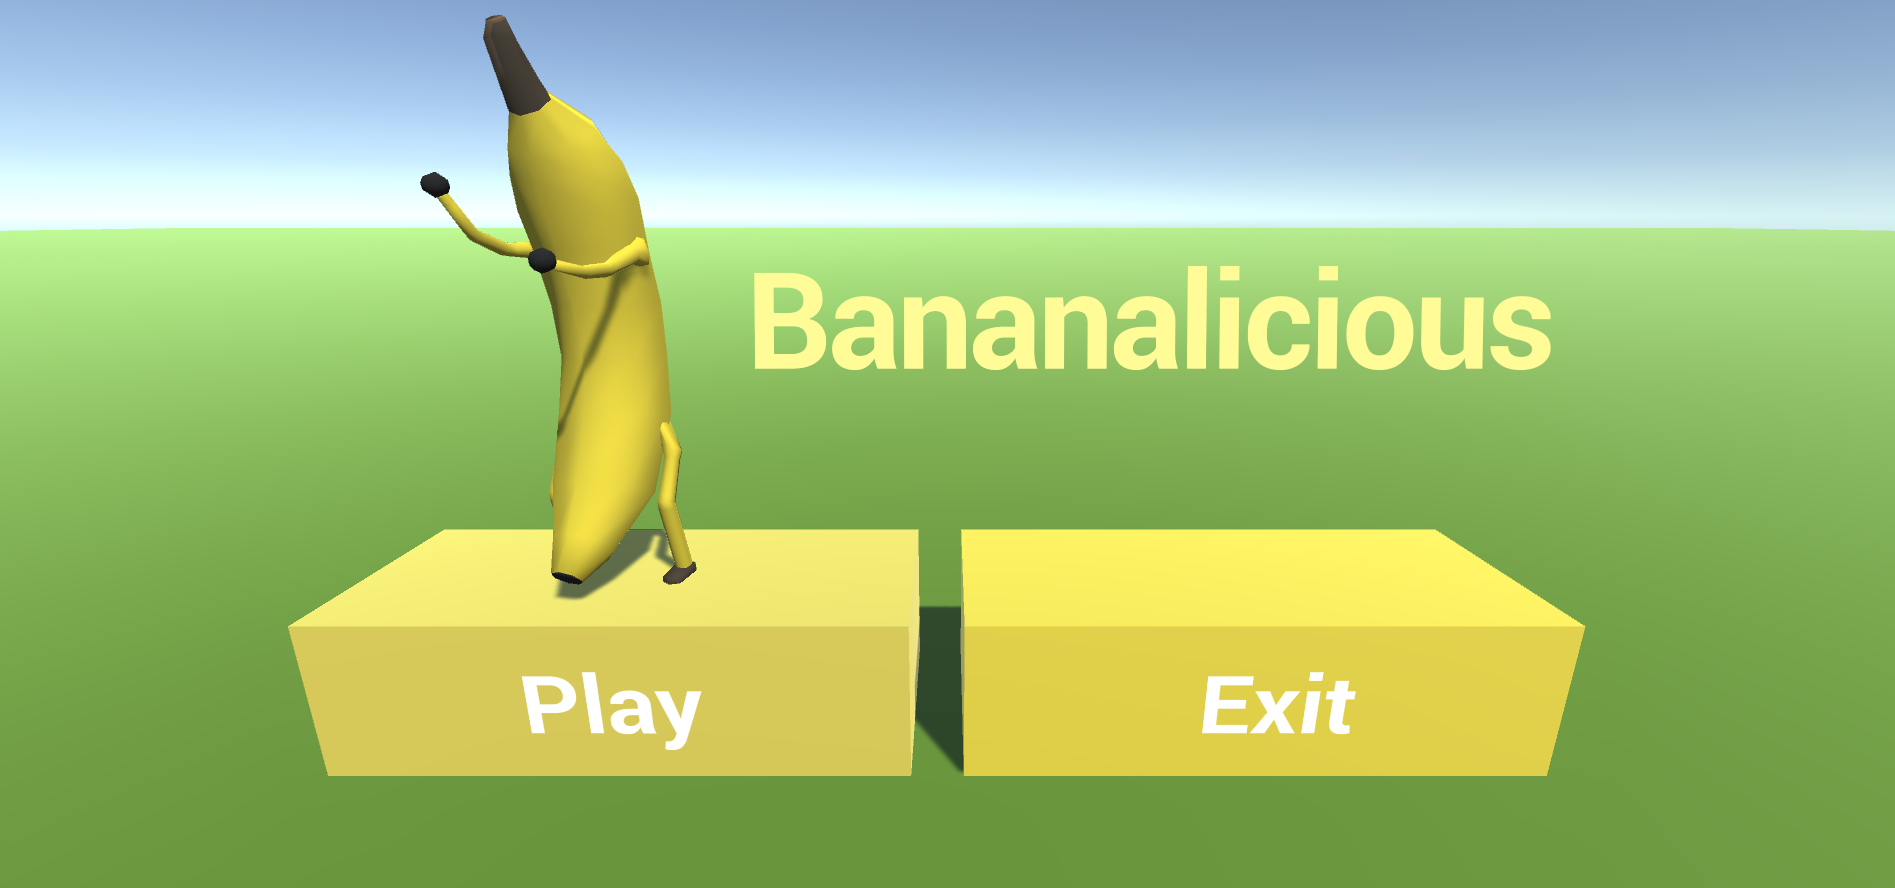 Bananalicious